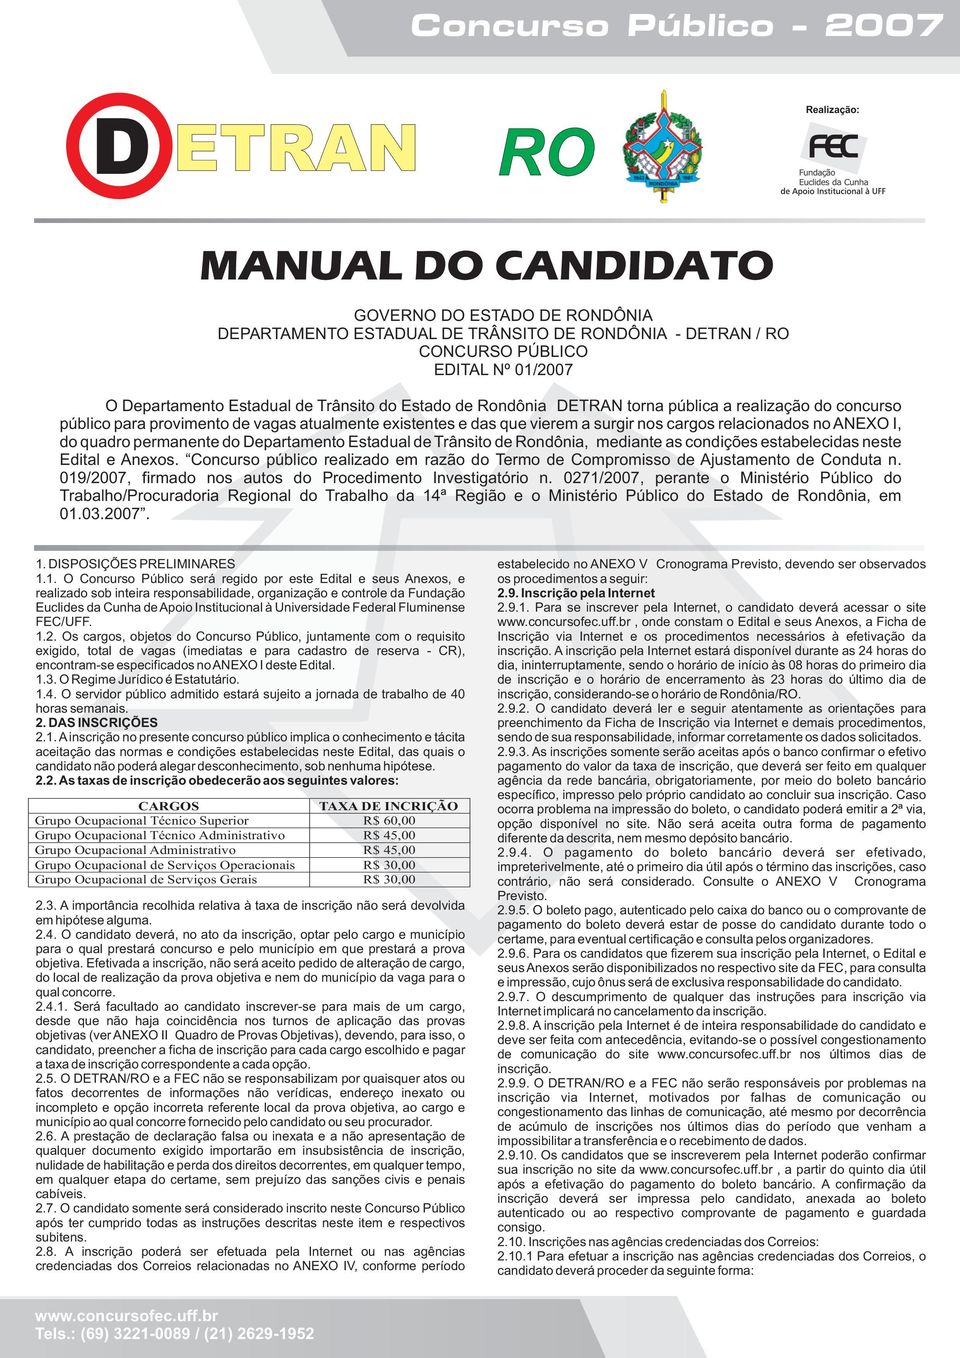 relacionados no ANEXO I, do quadro permanente do Departamento Estadual de Trânsito de Rondônia, mediante as condições estabelecidas neste Edital e Anexos.